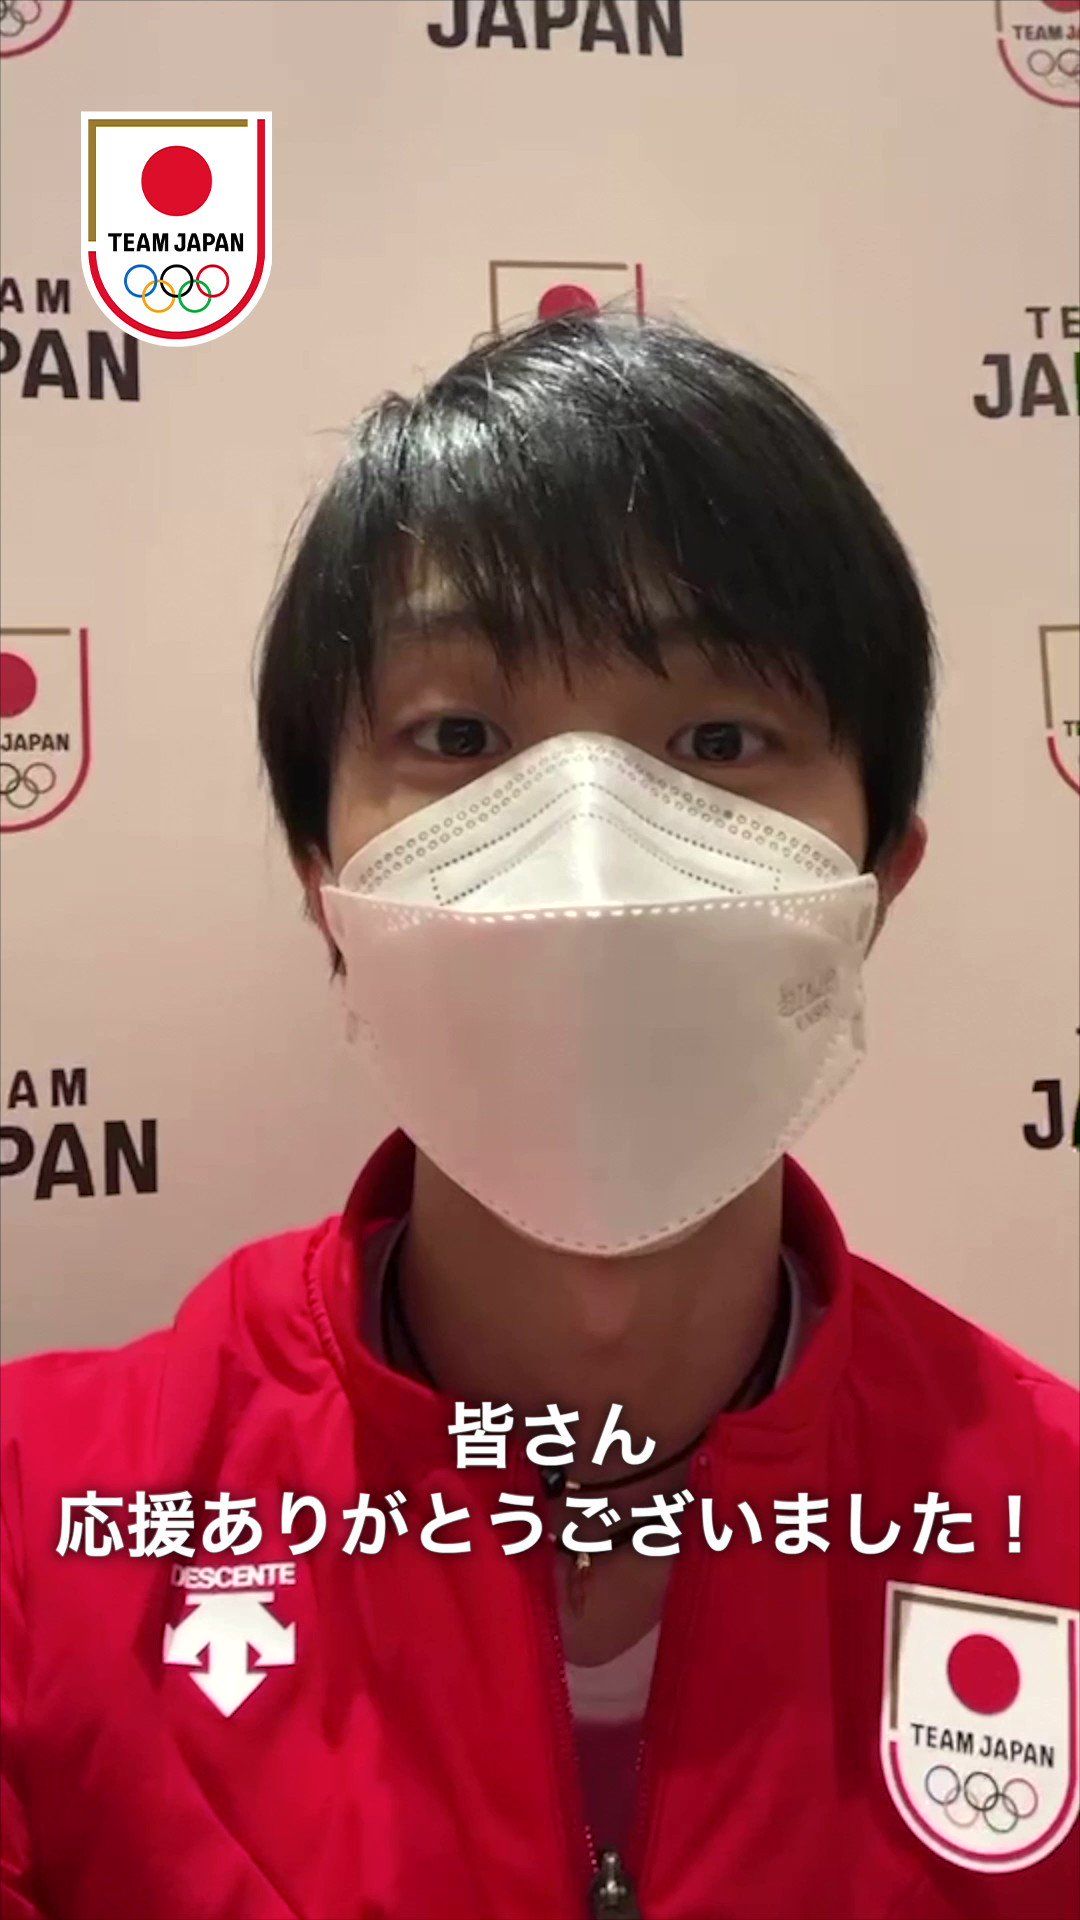 @TeamJapan's video Tweet